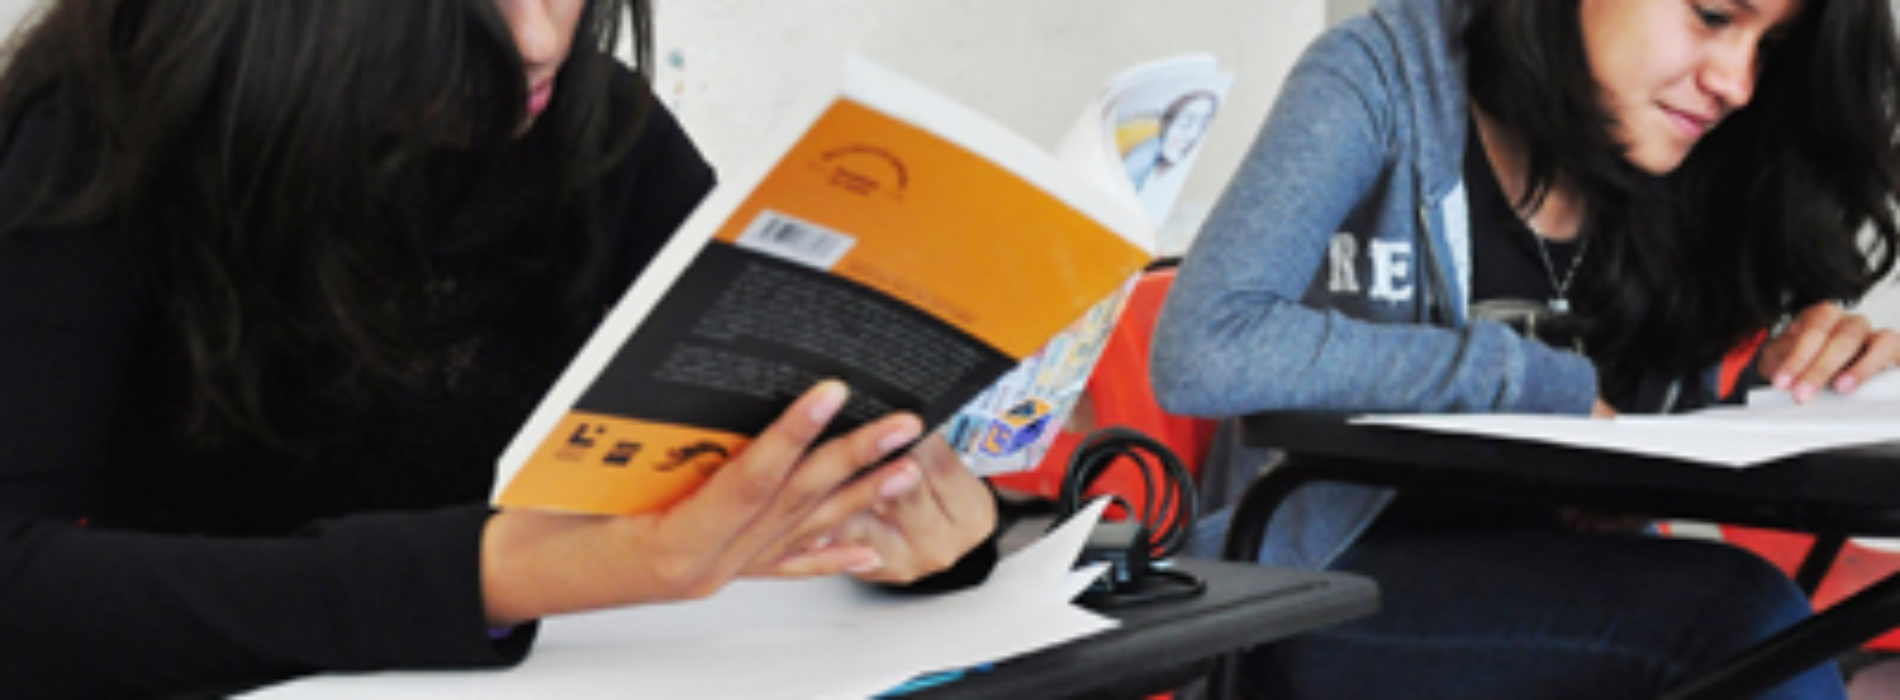 Participan escolares de la Secundaria “Moisés Sáenz Garza” en actividades de fomento a la lectura